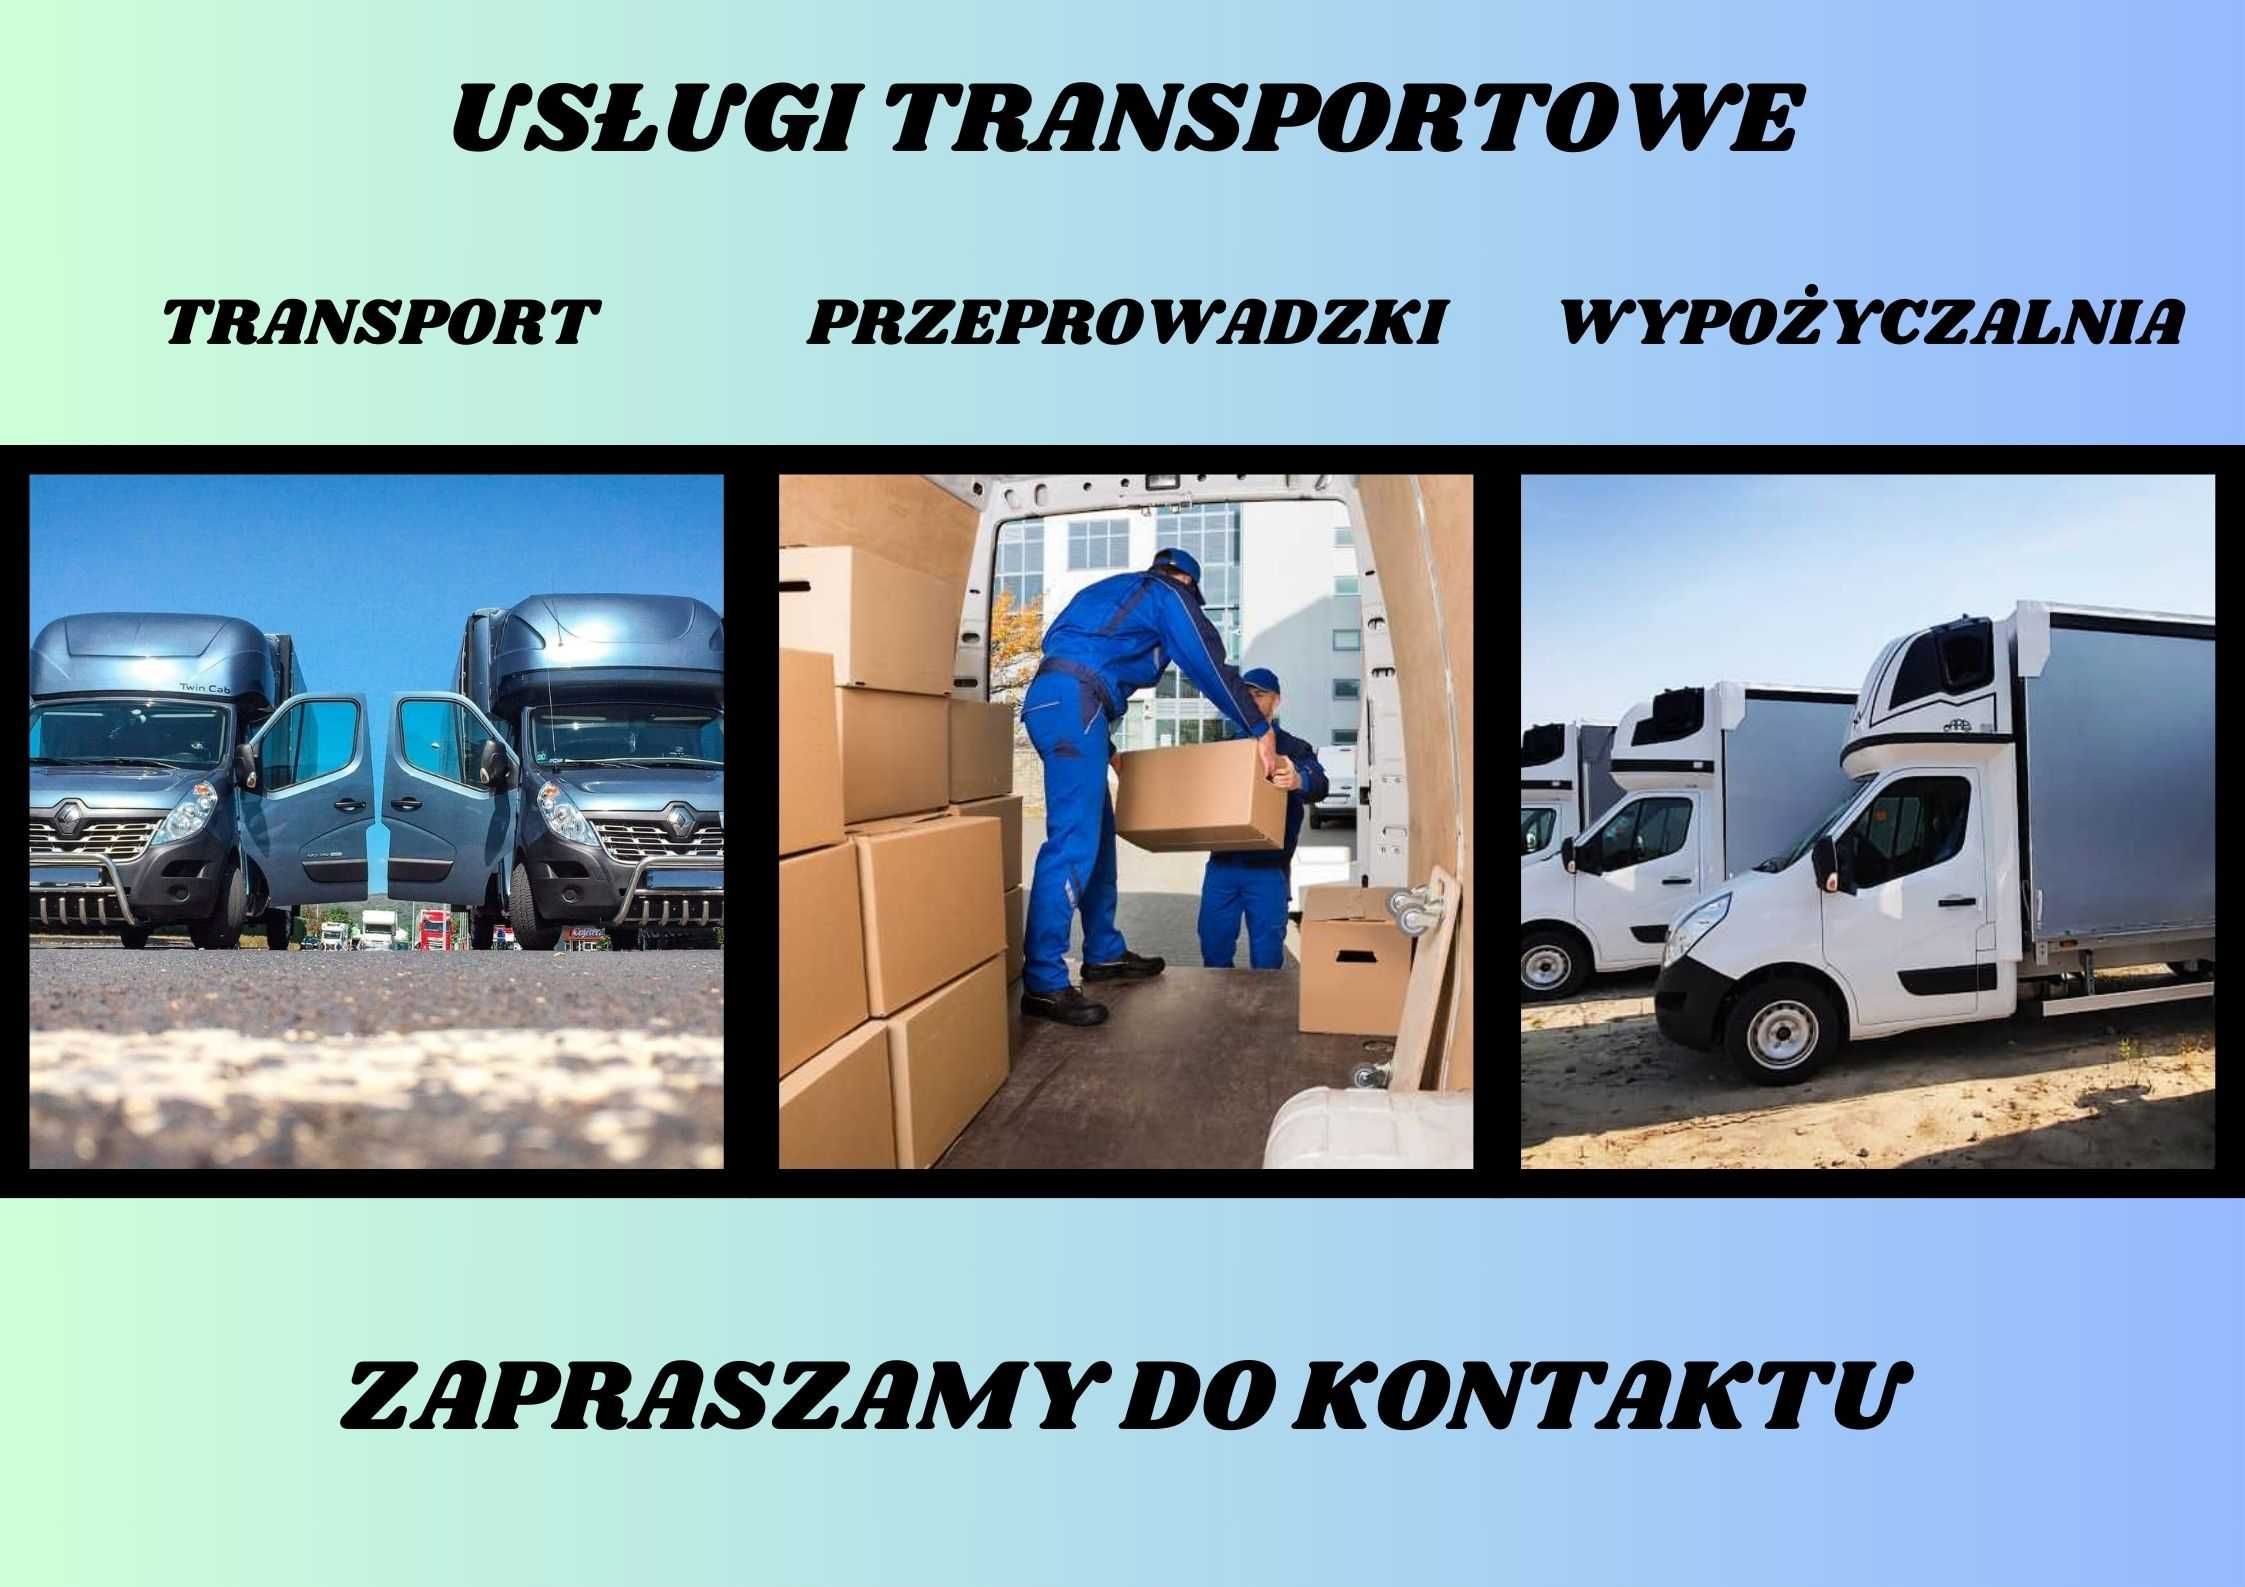 TRANSPORT/PRZEPROWADZKI/busy/tragarze/plandeka